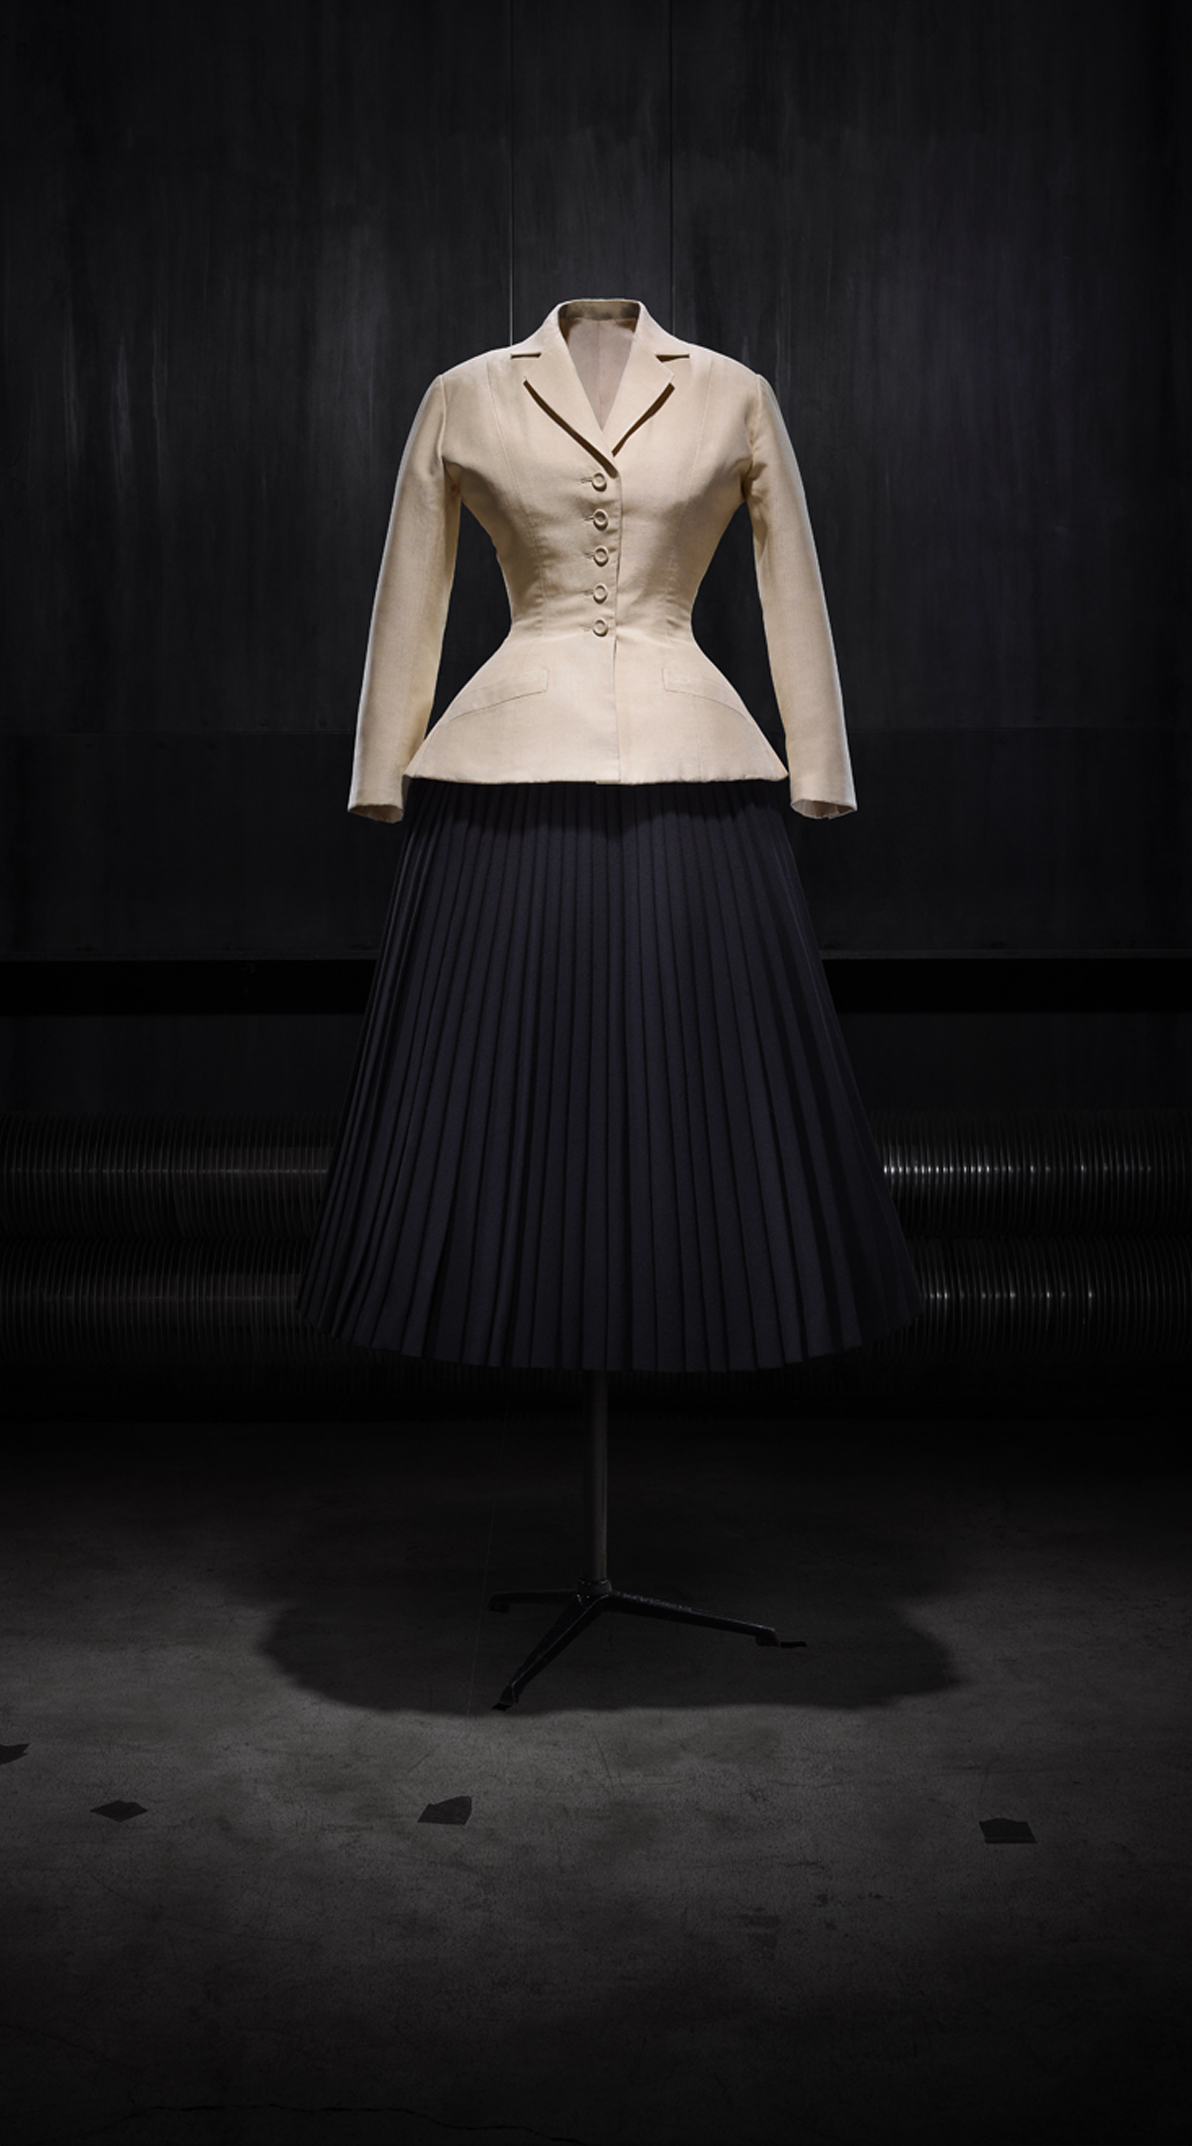 Visit the Dior Champs-Elysées Virtual Store and shop exclusive